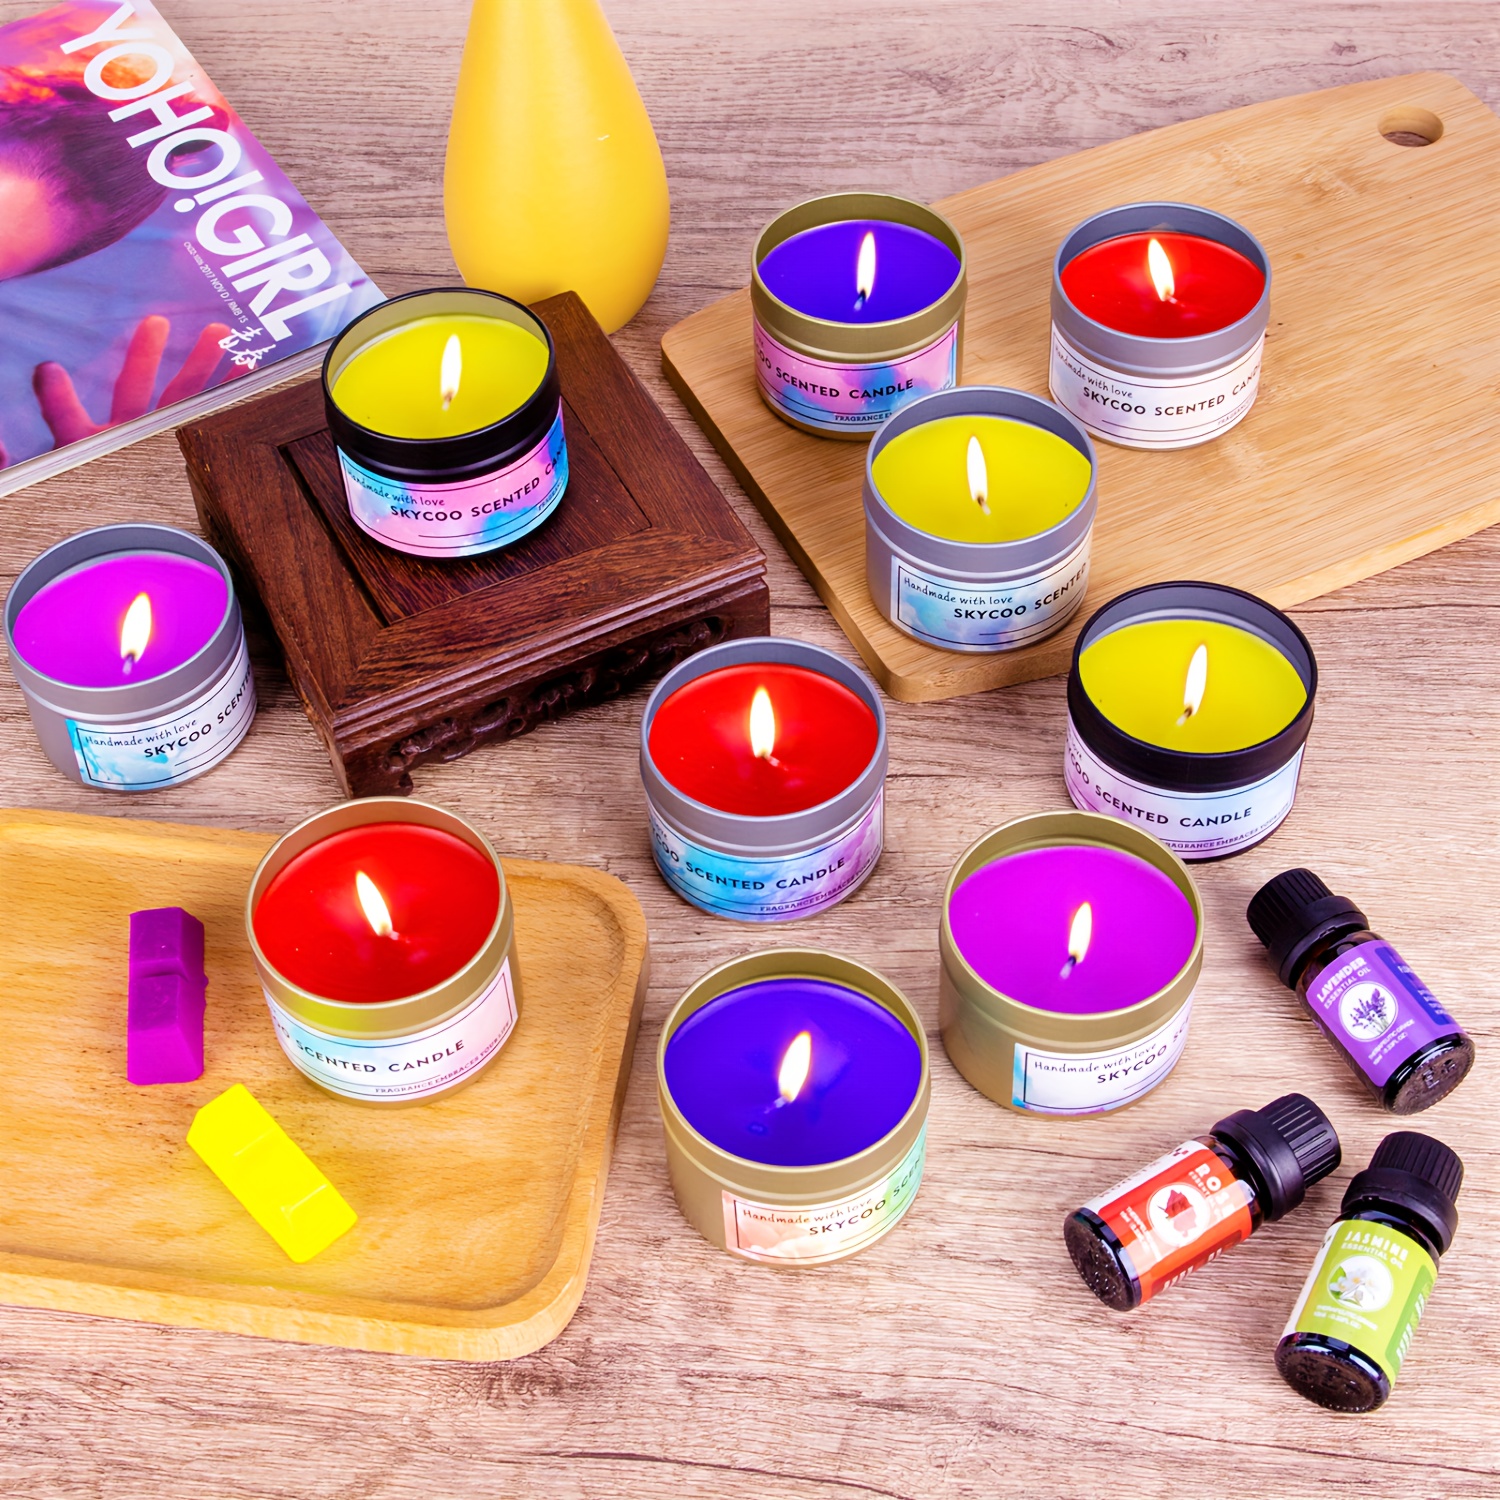  CraftZee Kit de fabricación de velas para adultos principiantes  – Kit de fabricación de velas de soja incluye cera de soja, aromas, mechas,  tintes, latas, crisol y más suministros para hacer